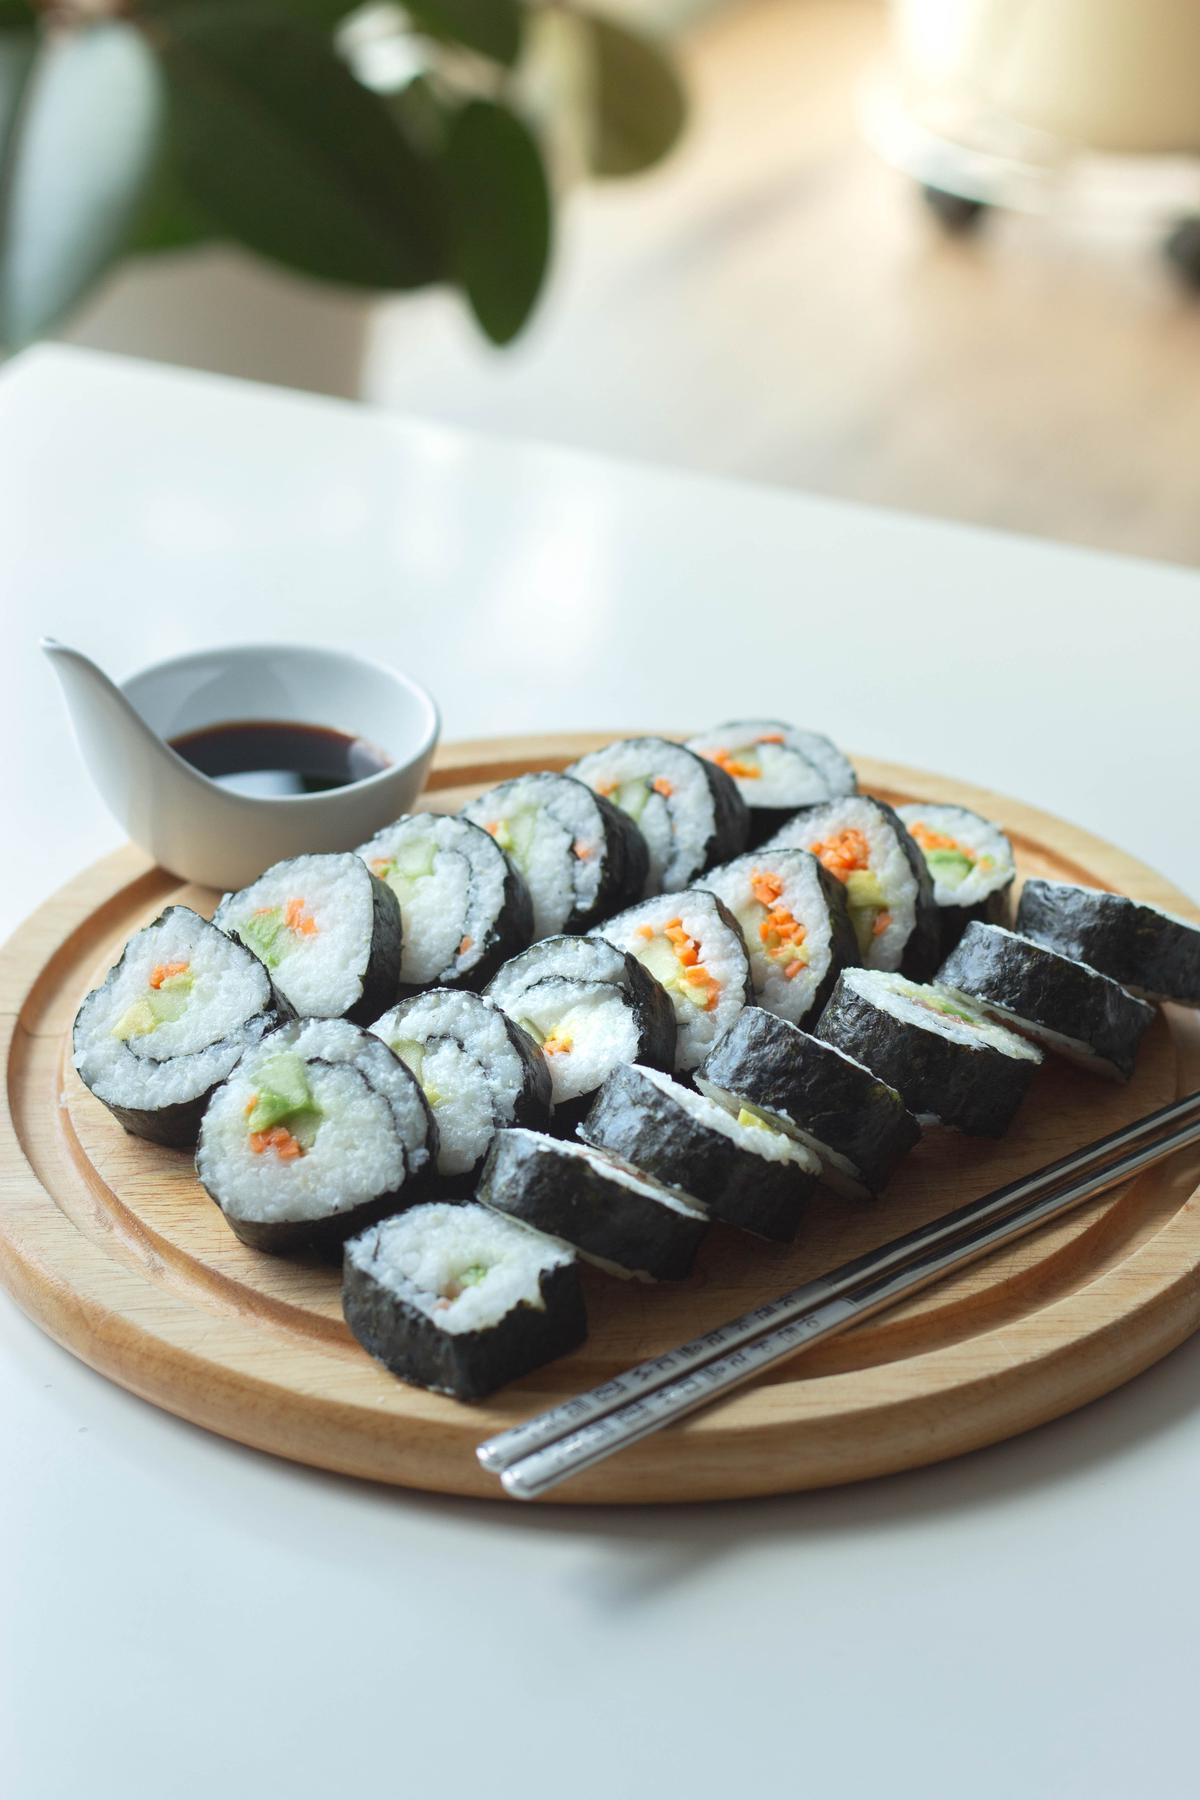 Descripción de la imagen: Un plato de rollos de sushi que representan diferentes interpretaciones del sushi de todo el mundo